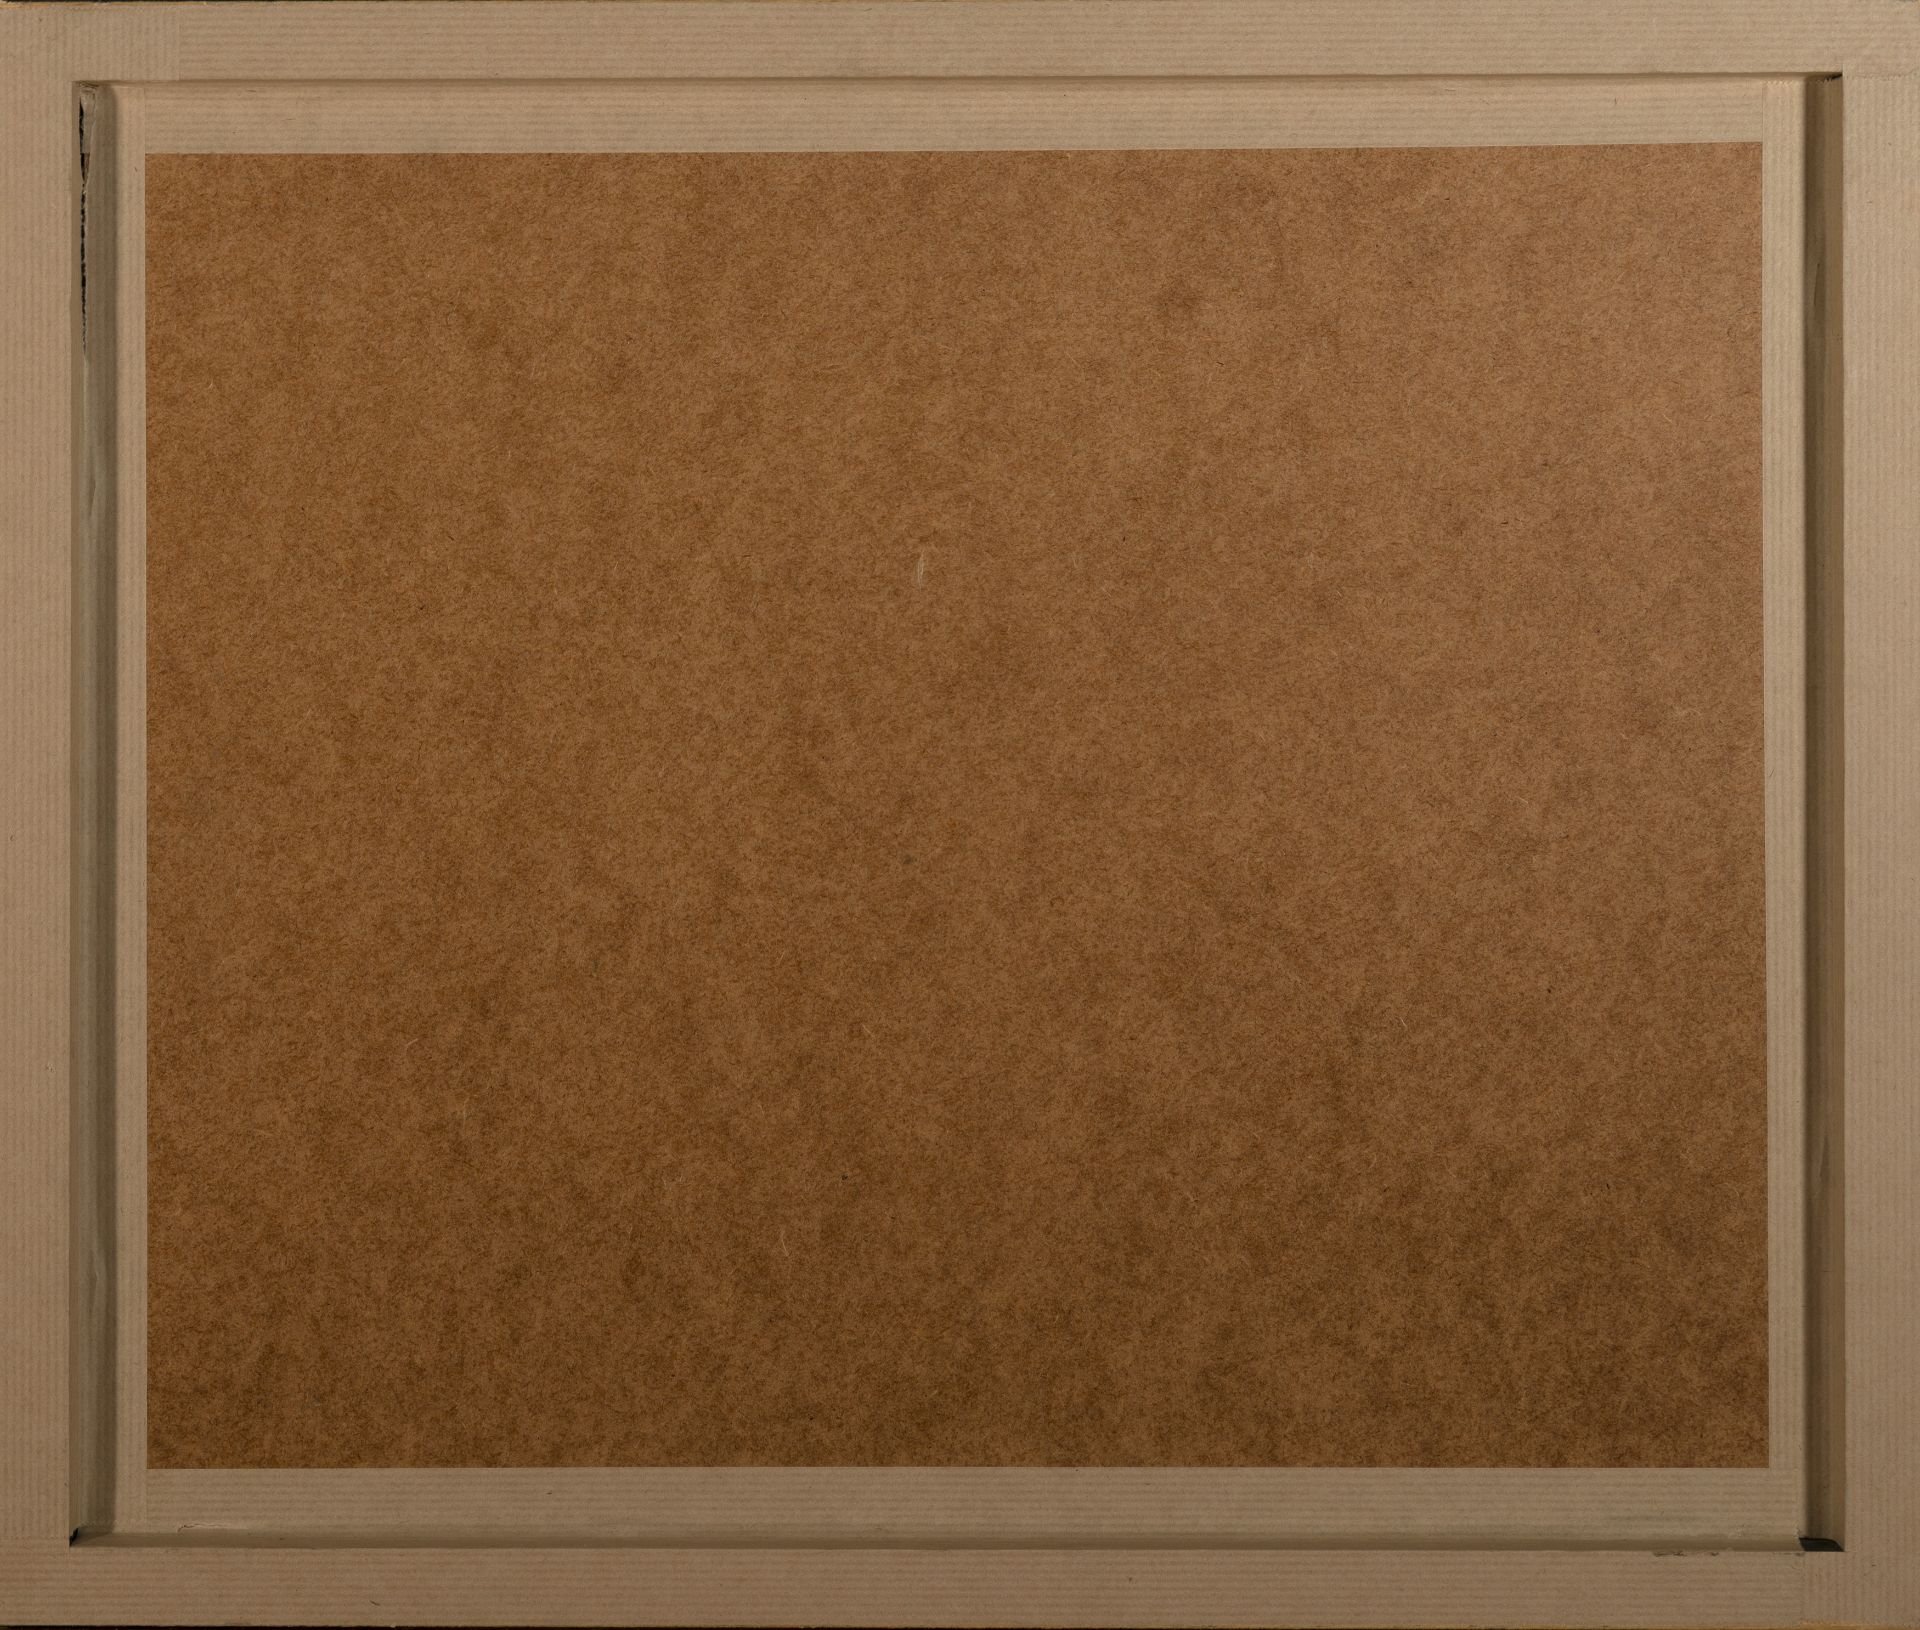 Semyon, 2012 pastel on paper - Image 3 of 3